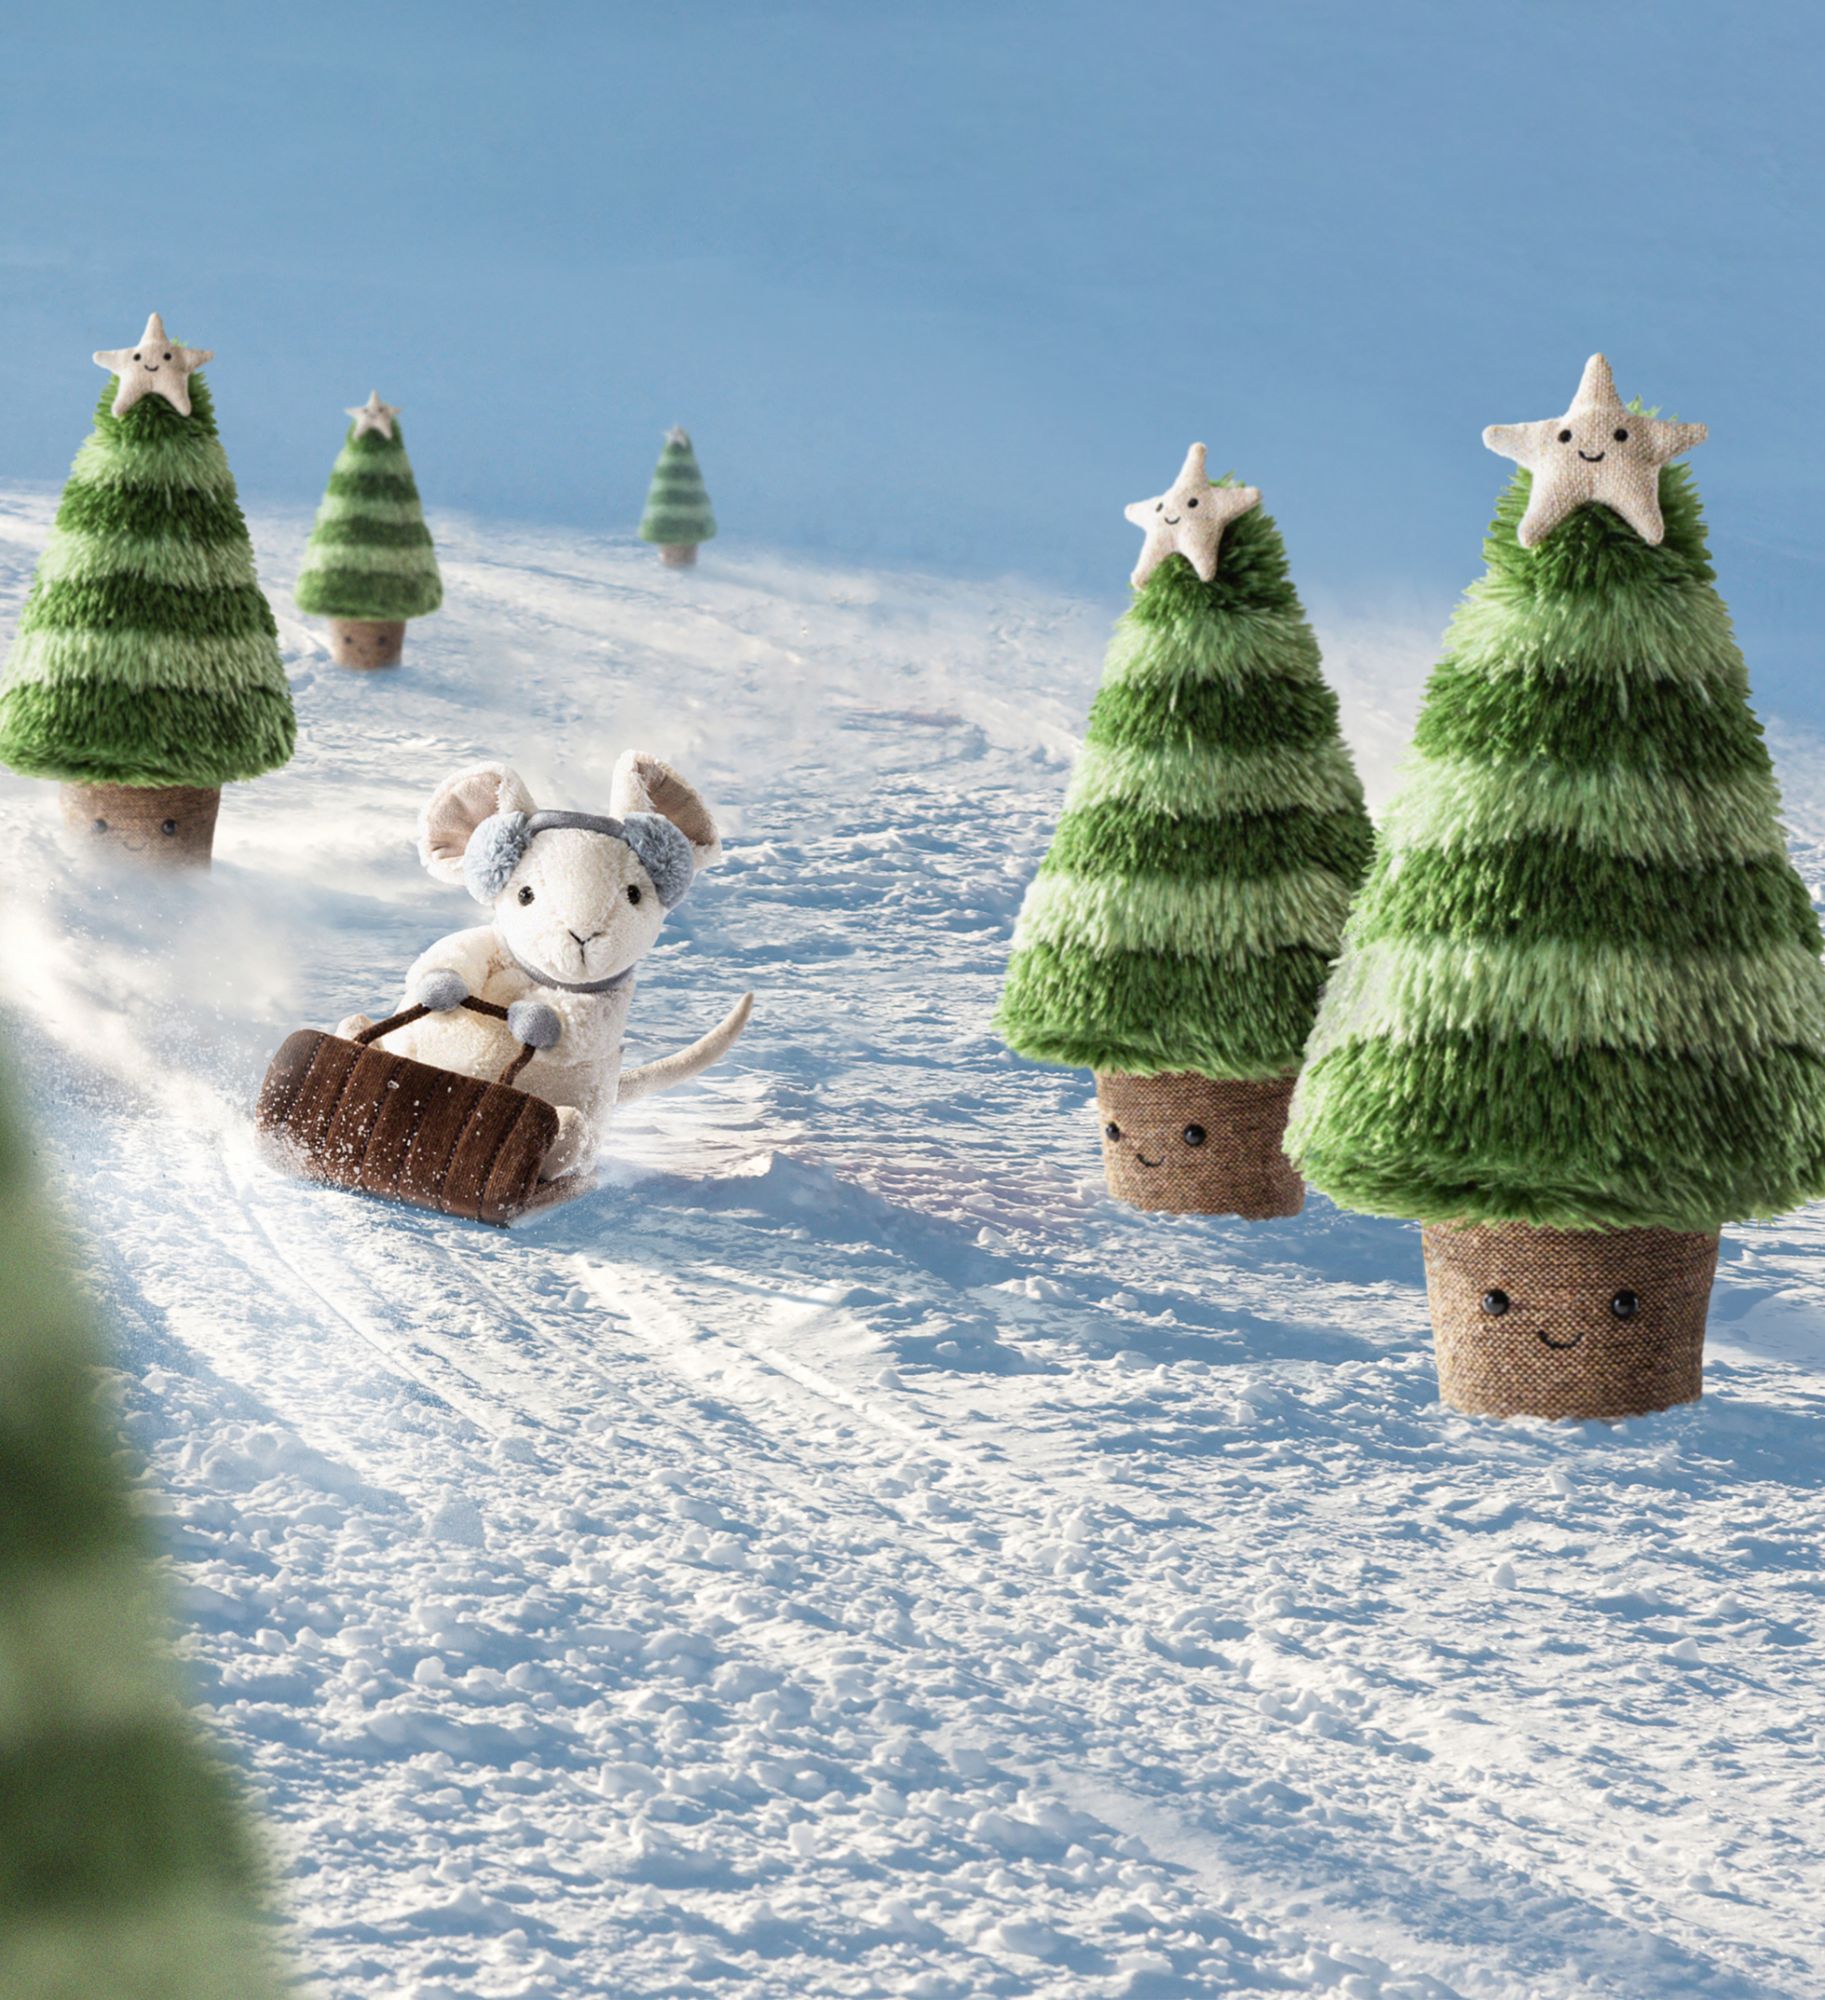 JellyCat: Weihnachtsbaummaskottchen mit einem lächelnden Stern 45 cm